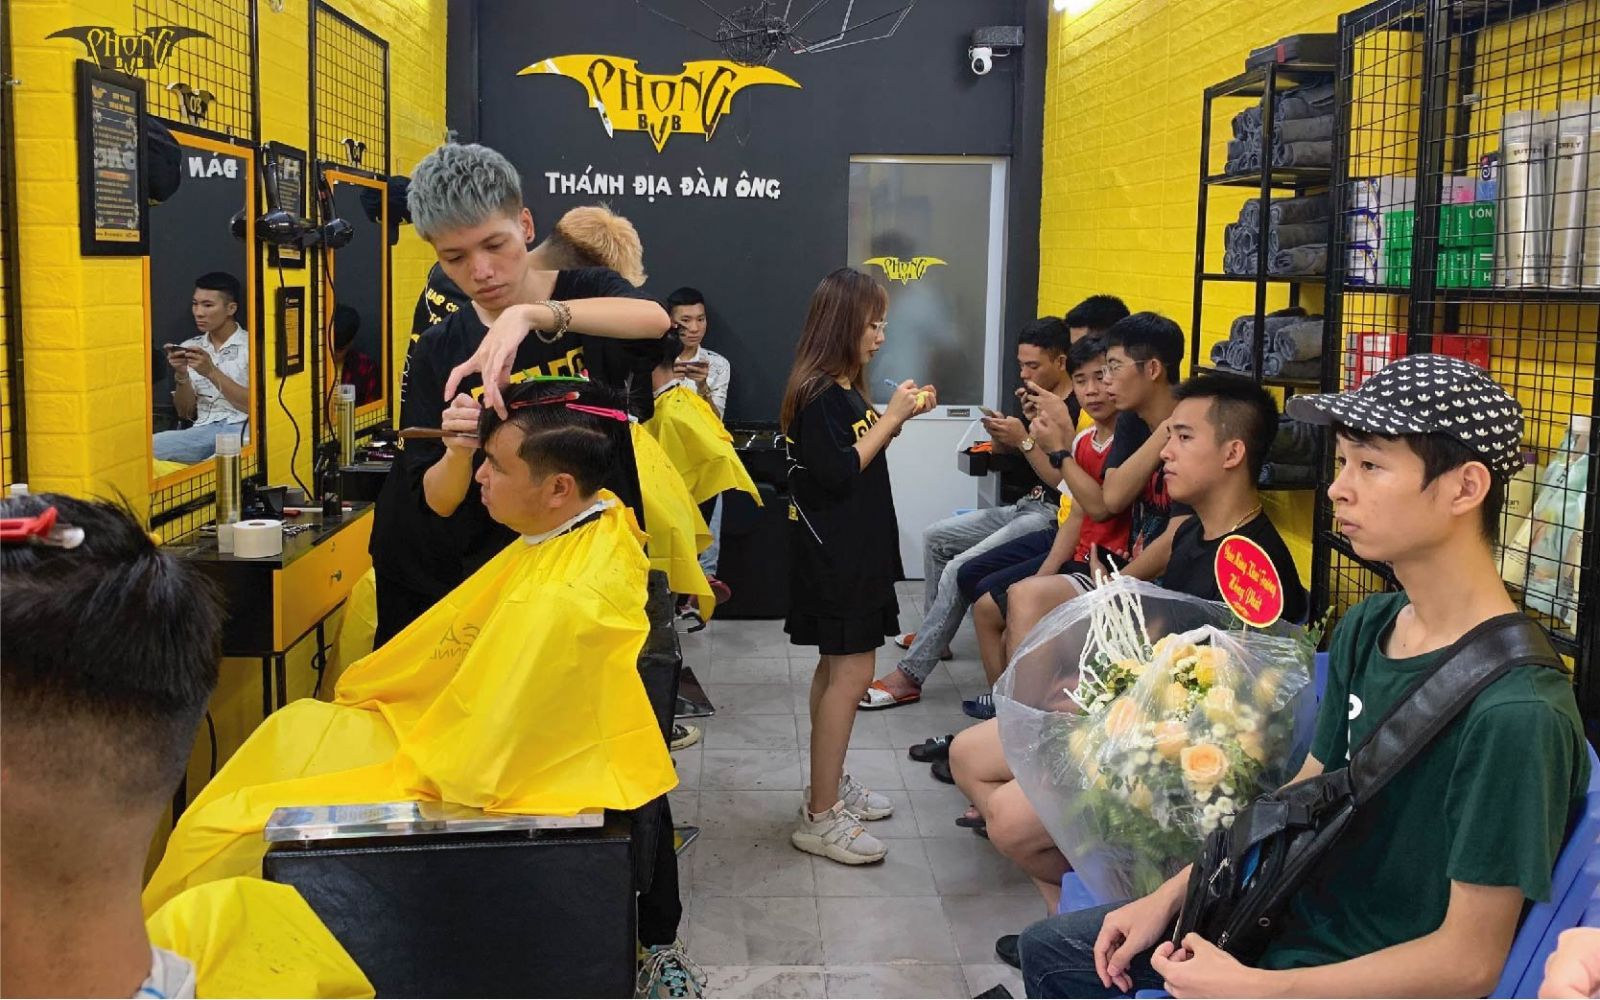 Phong BvB là chuỗi tiệm cắt tóc nam số 1 Hà Nội hiện nay